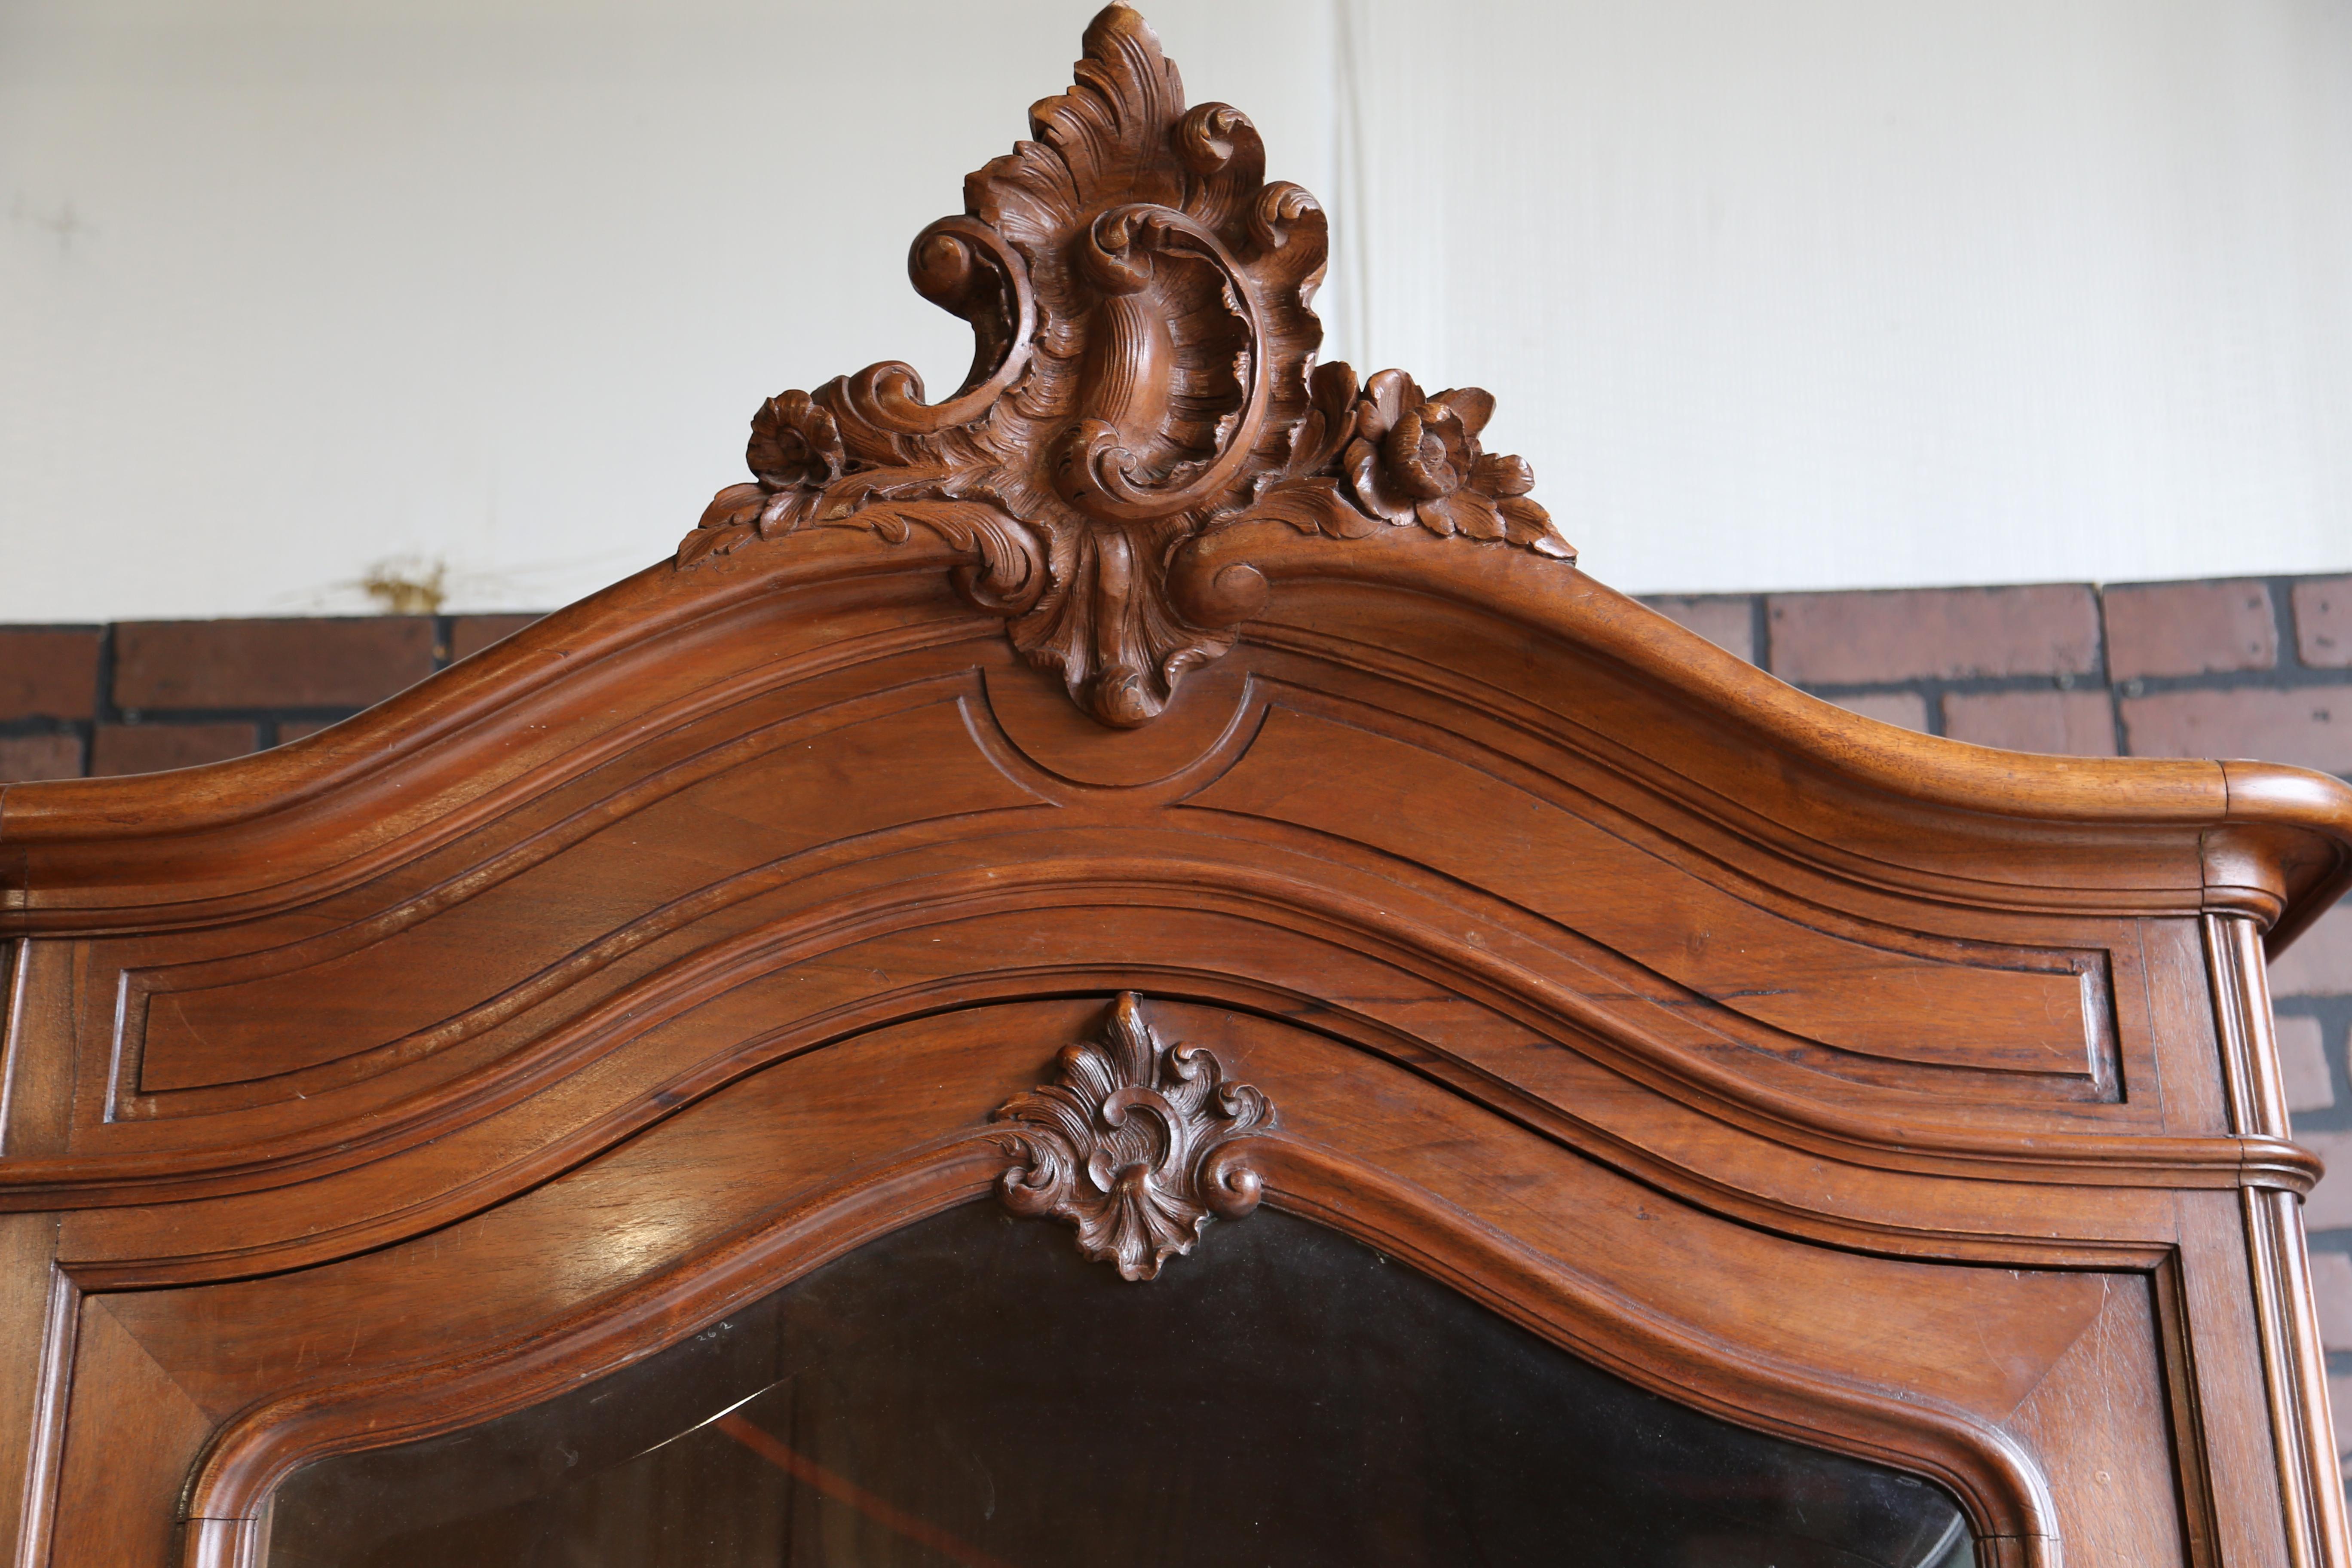 Antiker französischer Louis XV Rokoko-Schrank. Dieser Schrank ist in einem bemerkenswerten Zustand, wenn man sein hohes Alter bedenkt. Ein wunderschön geschnitztes Giebelfeld ziert die Haube. Der Spiegel wurde von der Türfront entfernt, um Glas zu